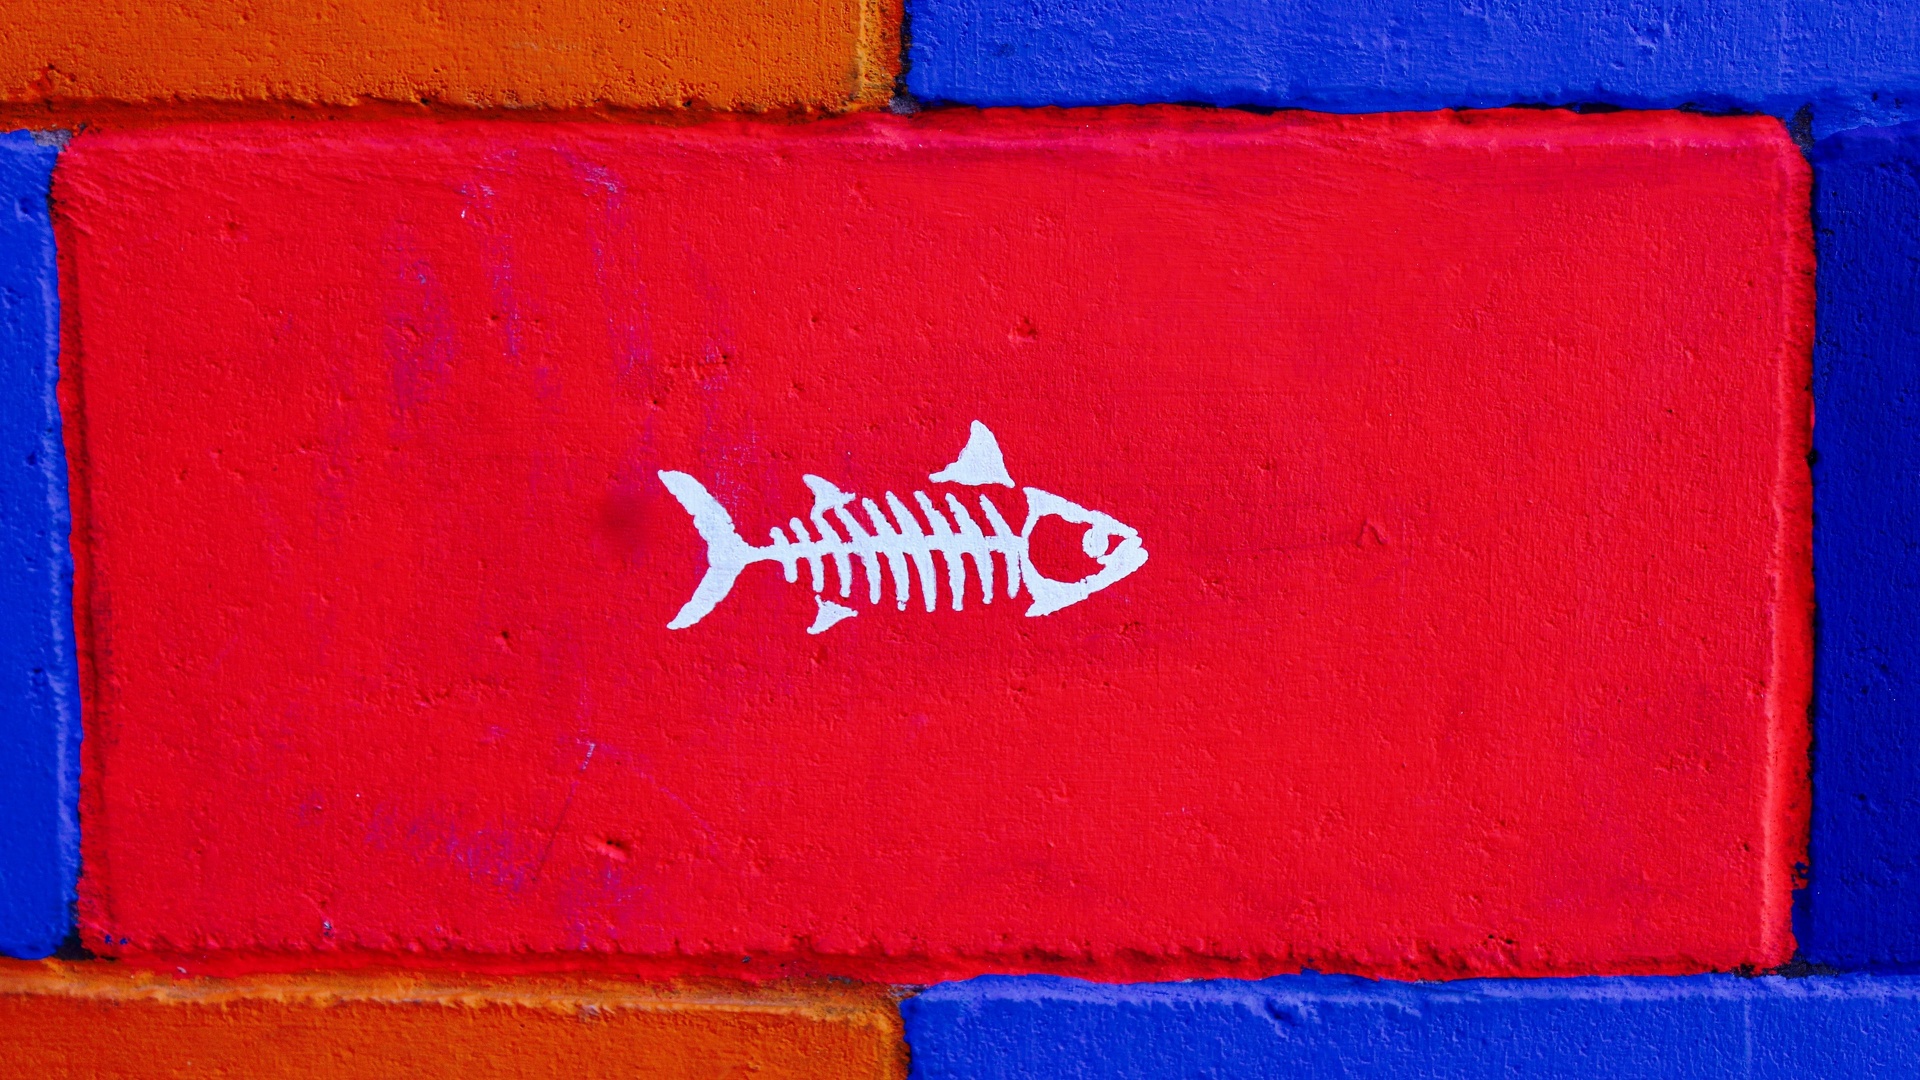 Détails brique - motif poisson.jpg